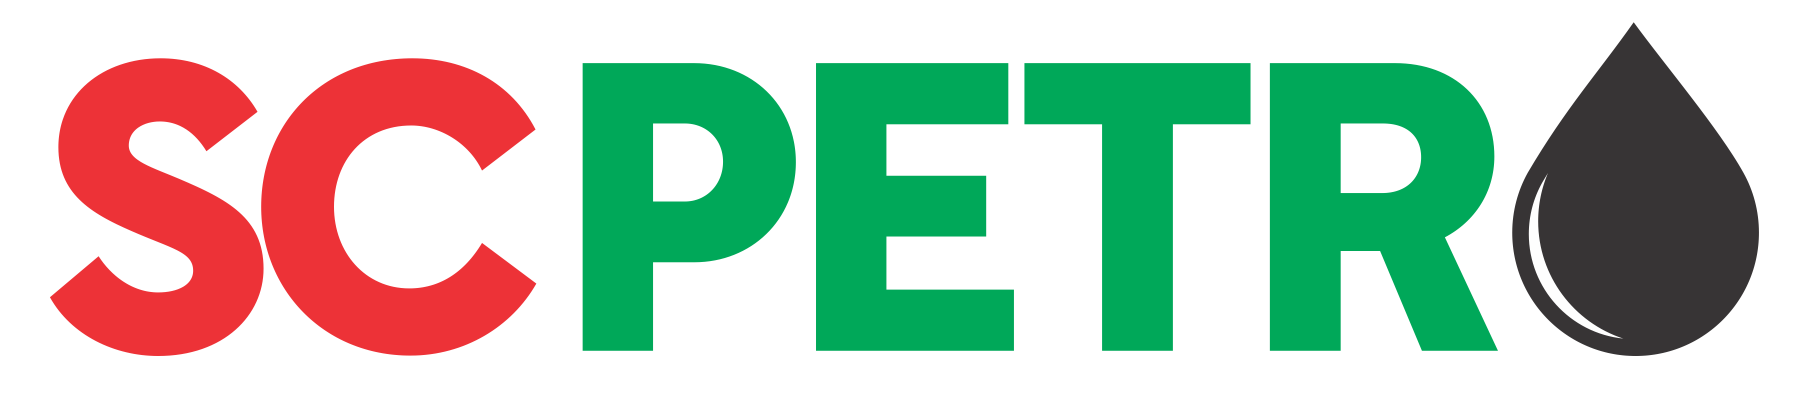 Logo_SC_Petro_COR